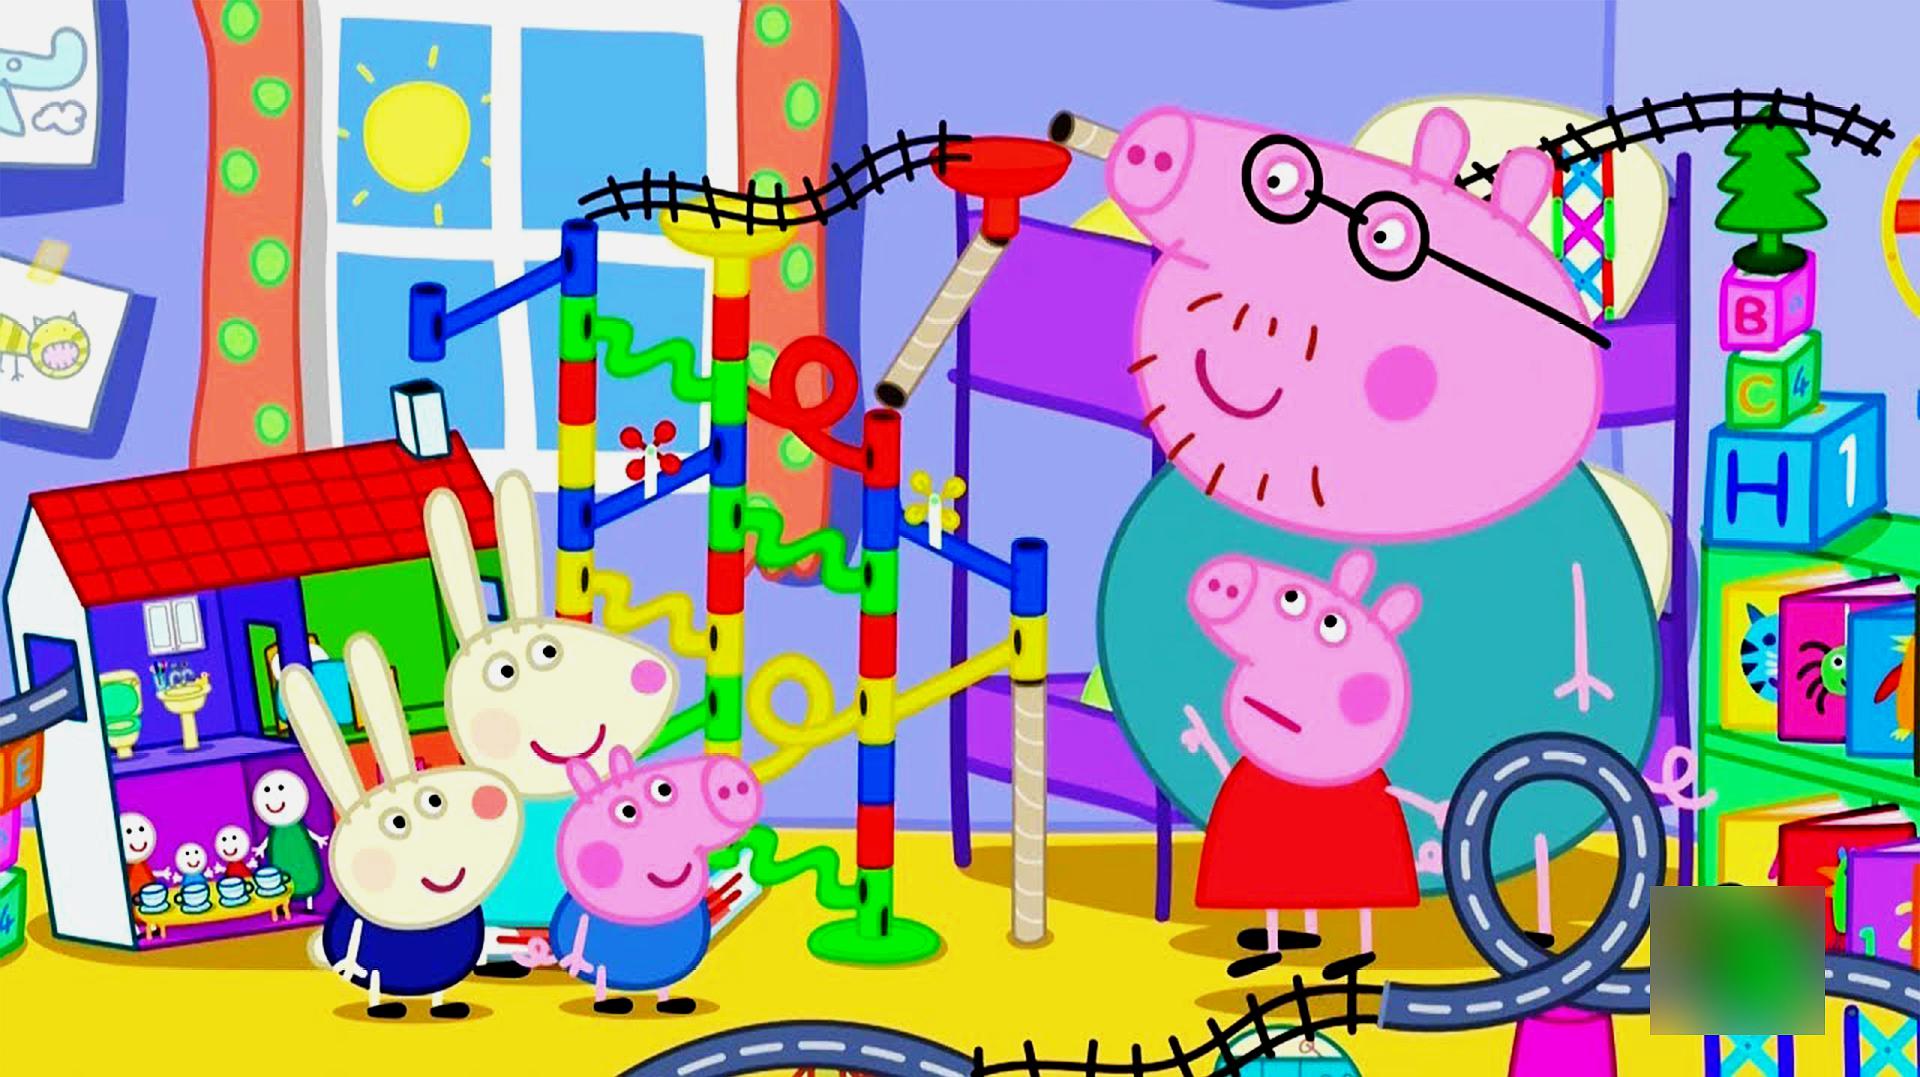 小猪佩奇和小猪乔治一起搭建的玩具 简笔画